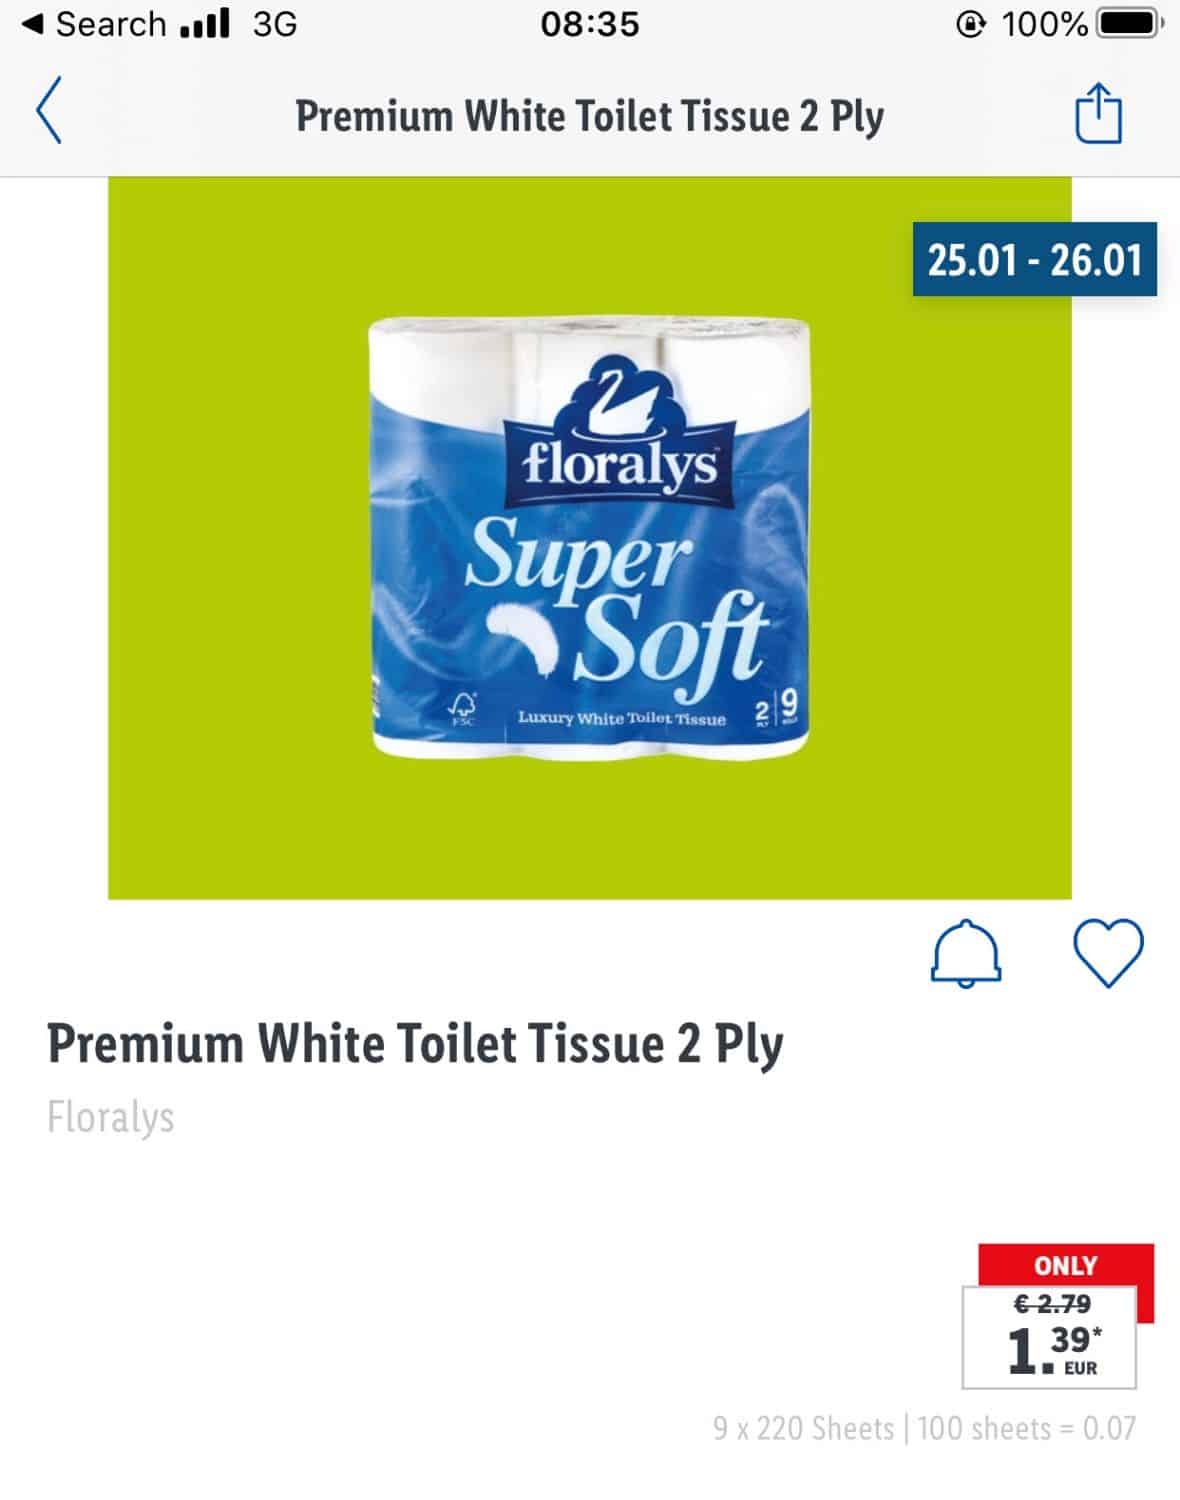 Premium White Toilet tissue - 7 cent for 100 sheets